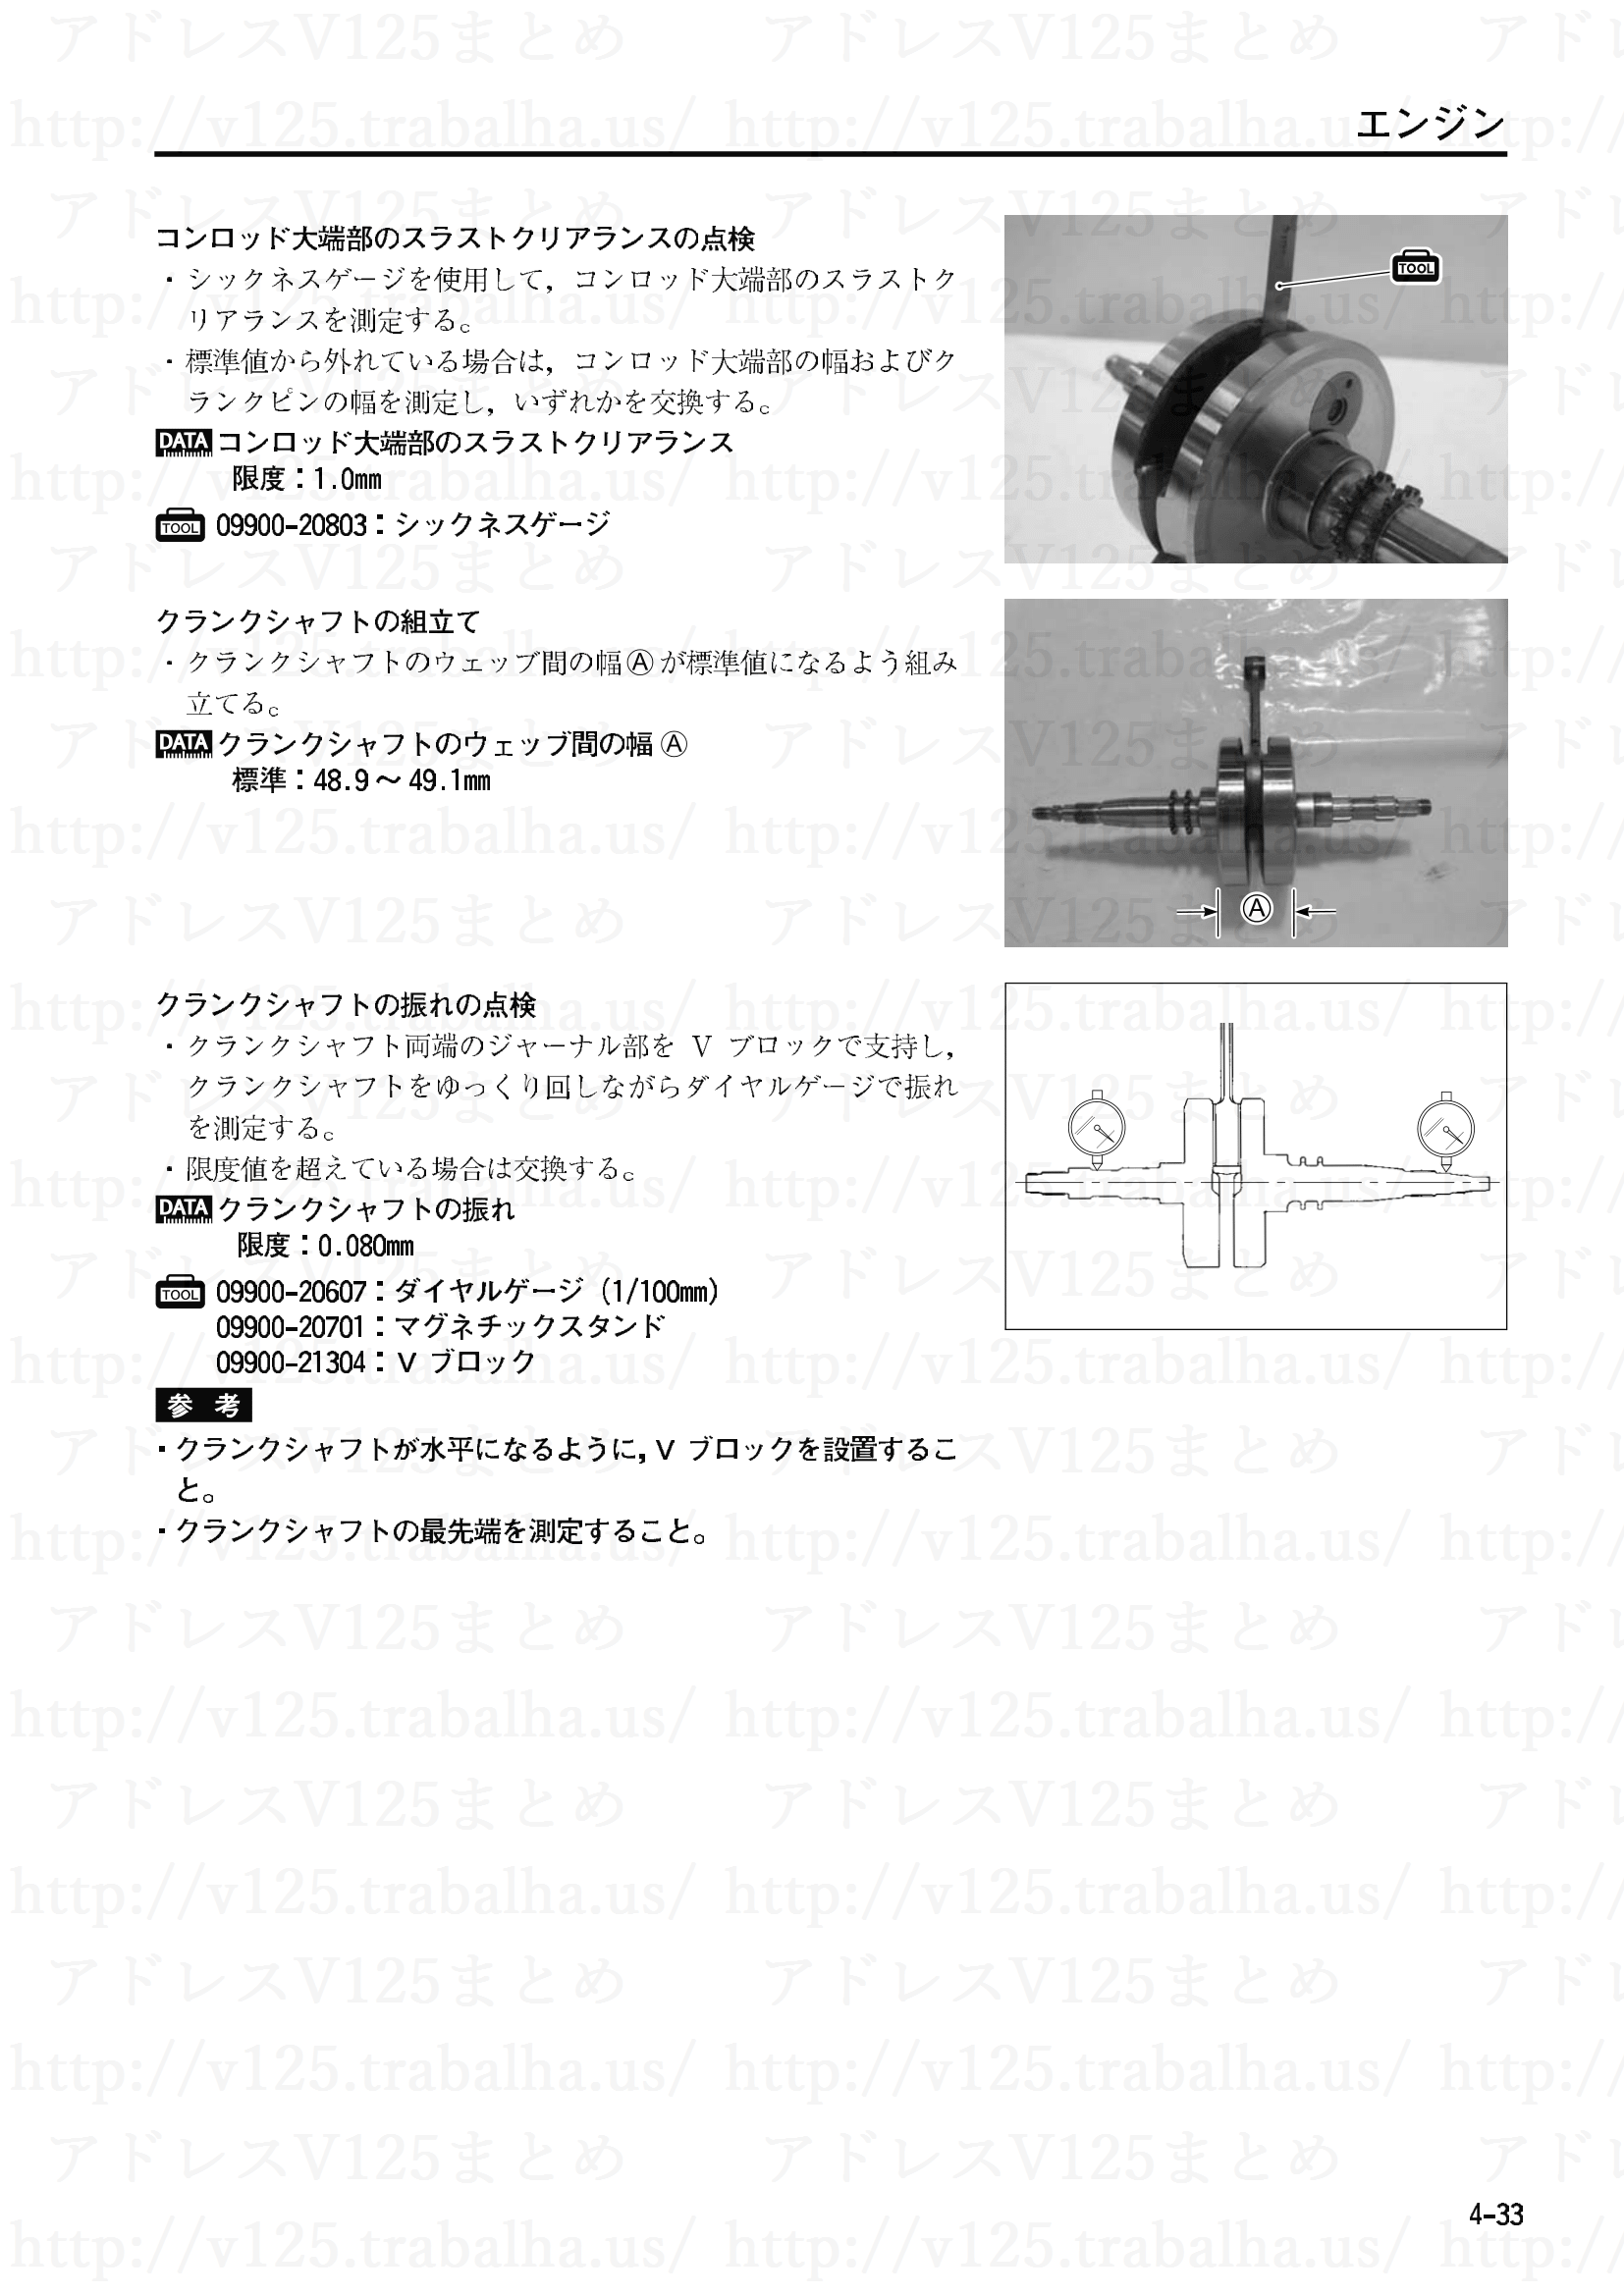 4-33【エンジン】エンジン部組部品の点検11